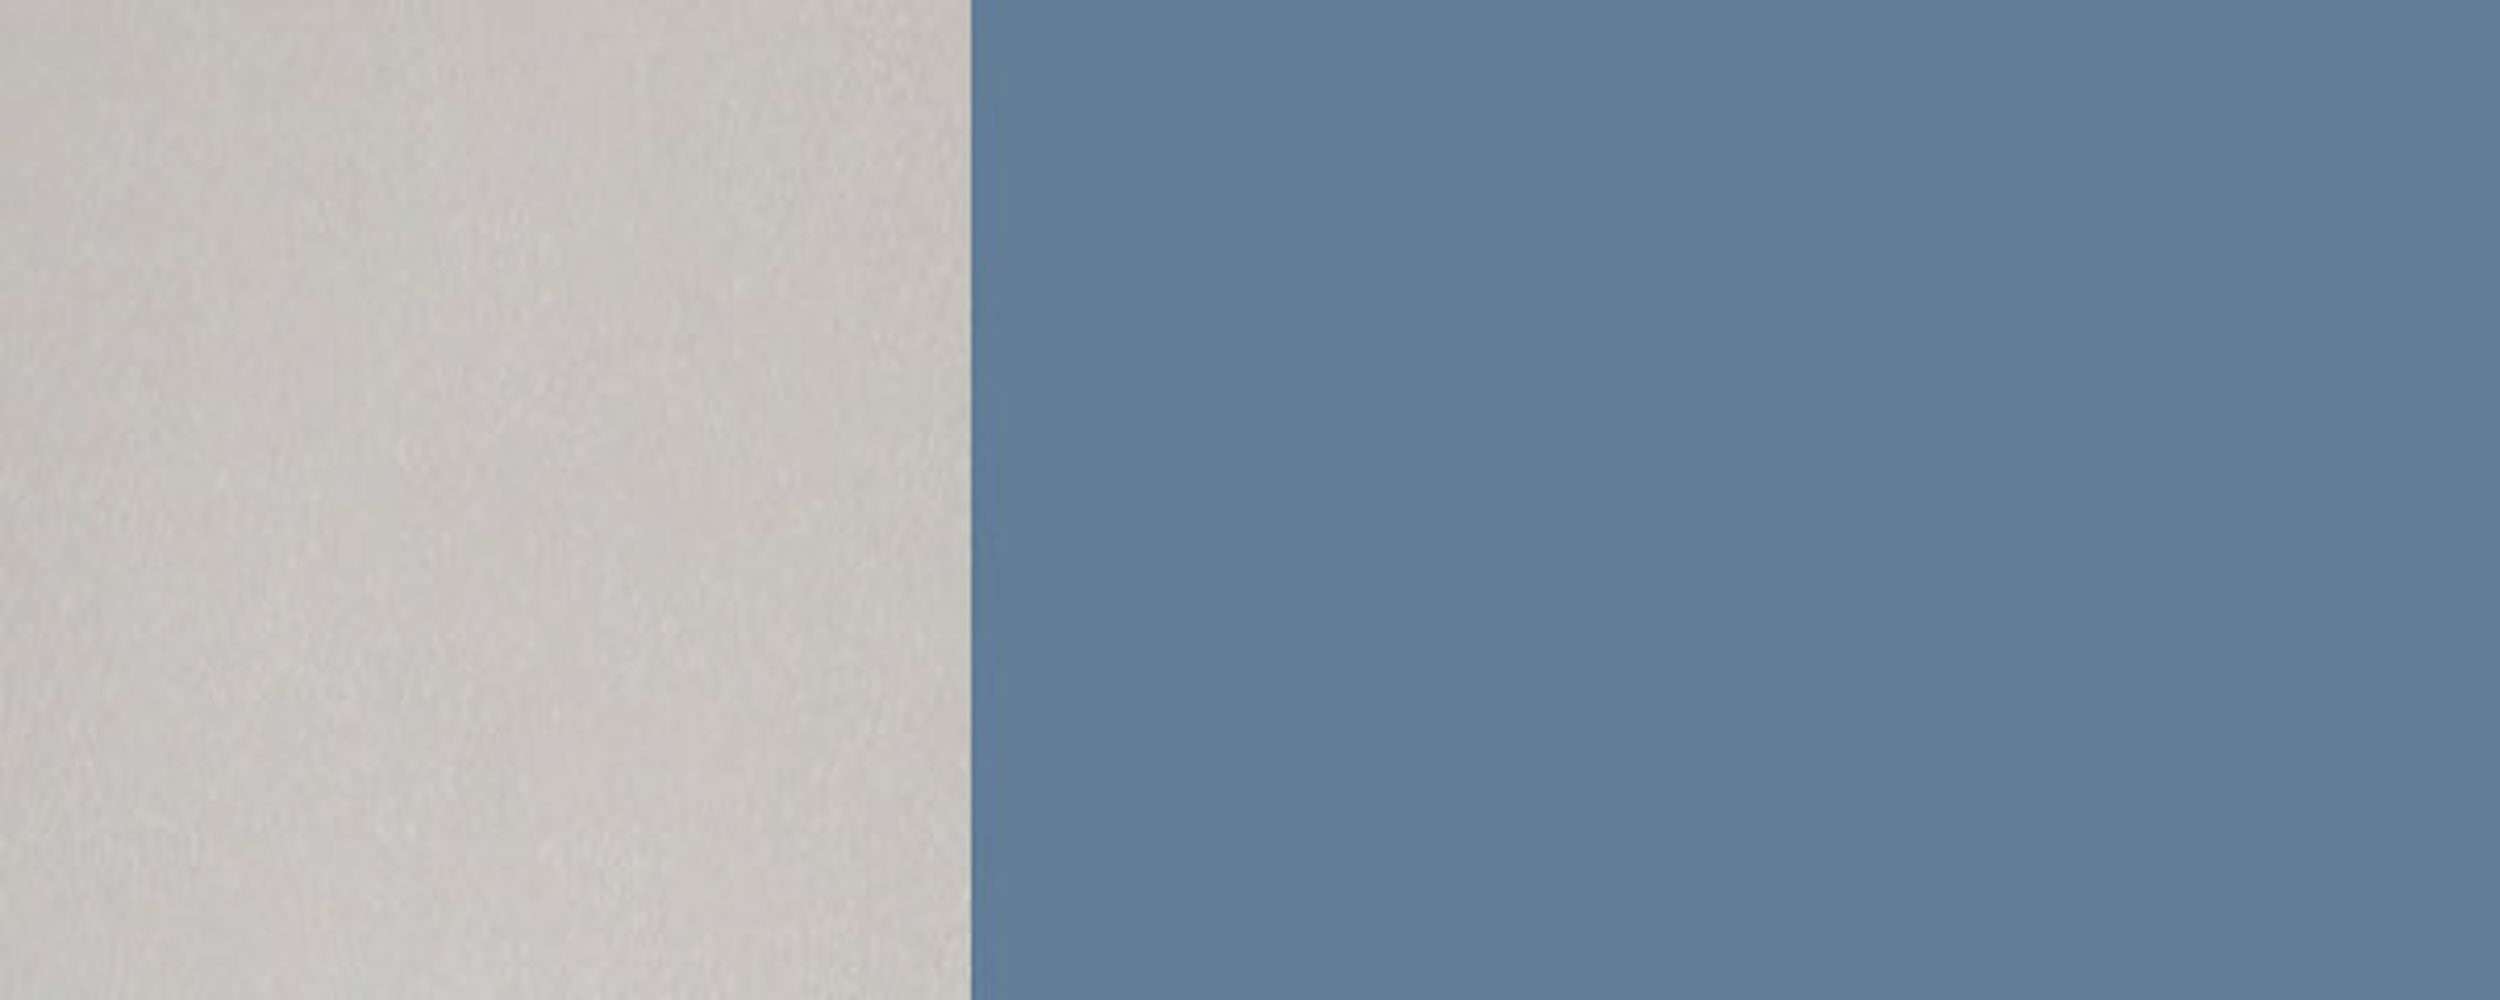 60cm 2-türig Hochglanz grifflos (Florence) taubenblau Feldmann-Wohnen RAL Florence 5014 Front- Korpusfarbe wählbar und Klapphängeschrank